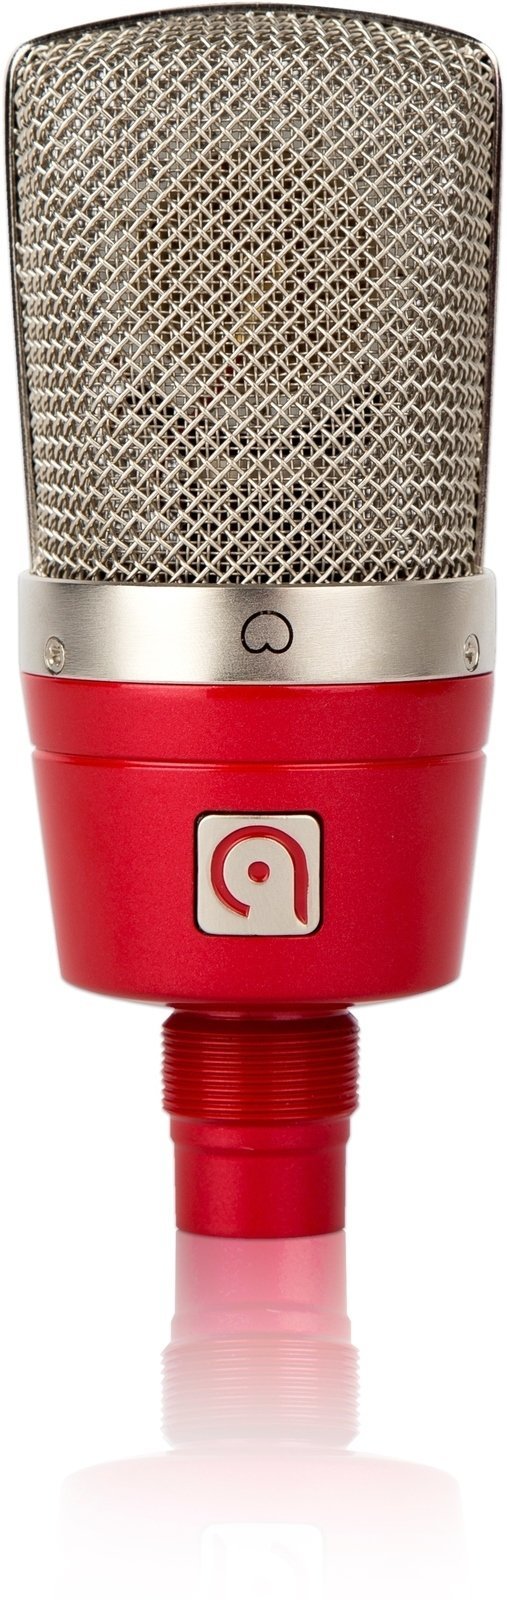 Microphone à condensateur pour studio Audio Probe LISA 1 Red